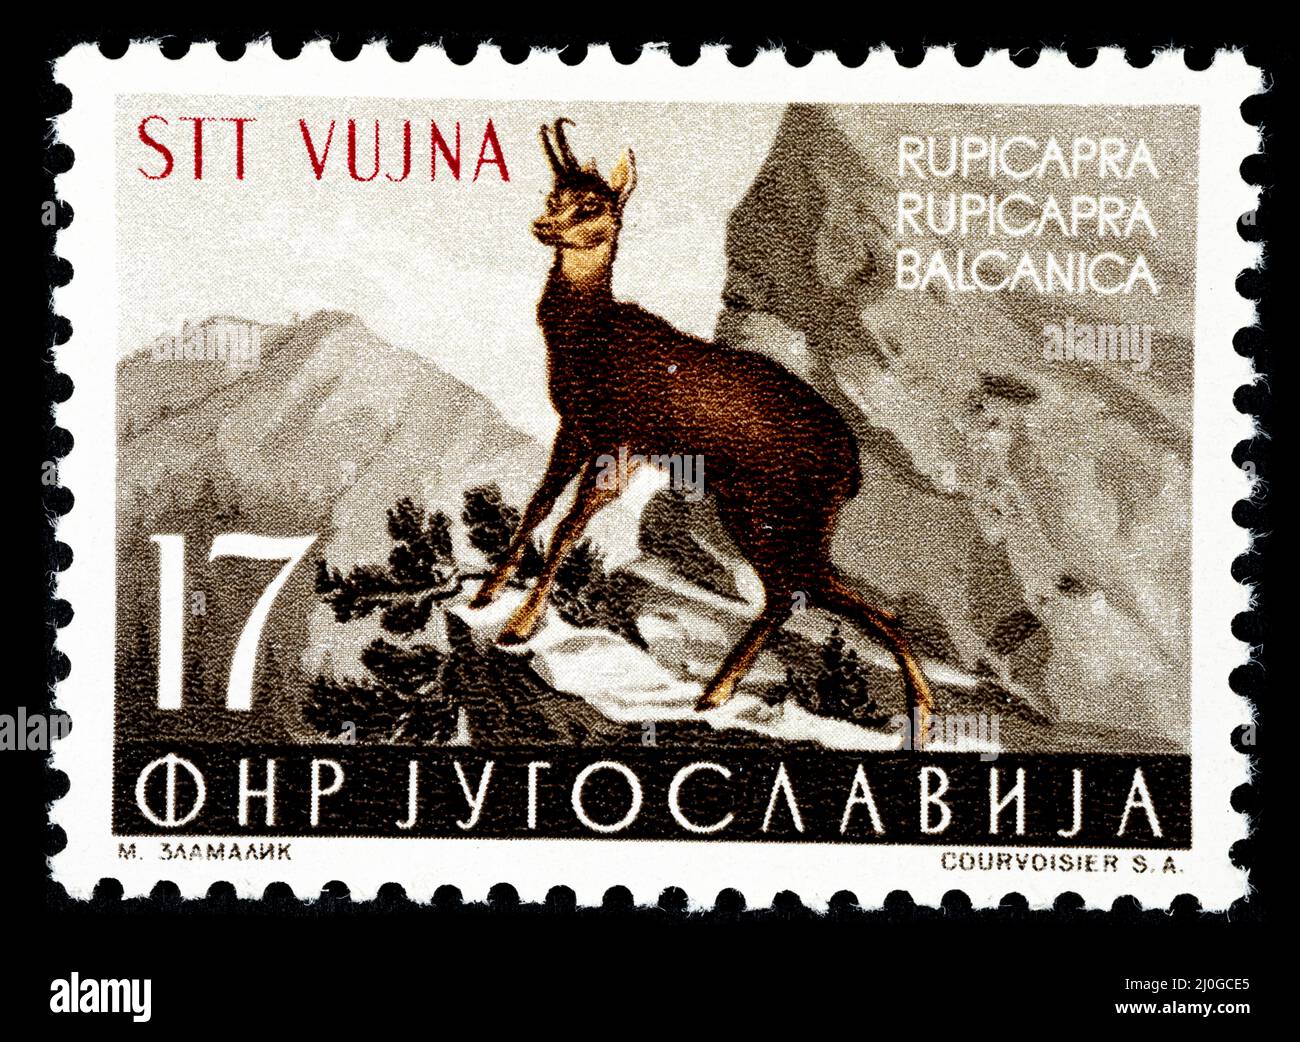 Timbre-poste commémoratif avec l'illustration d'un cerf de Virginie - Rupicapa Rupicapa Balcanica émis par l'ex-Yougoslavie surimpression STT VUJNA, Banque D'Images